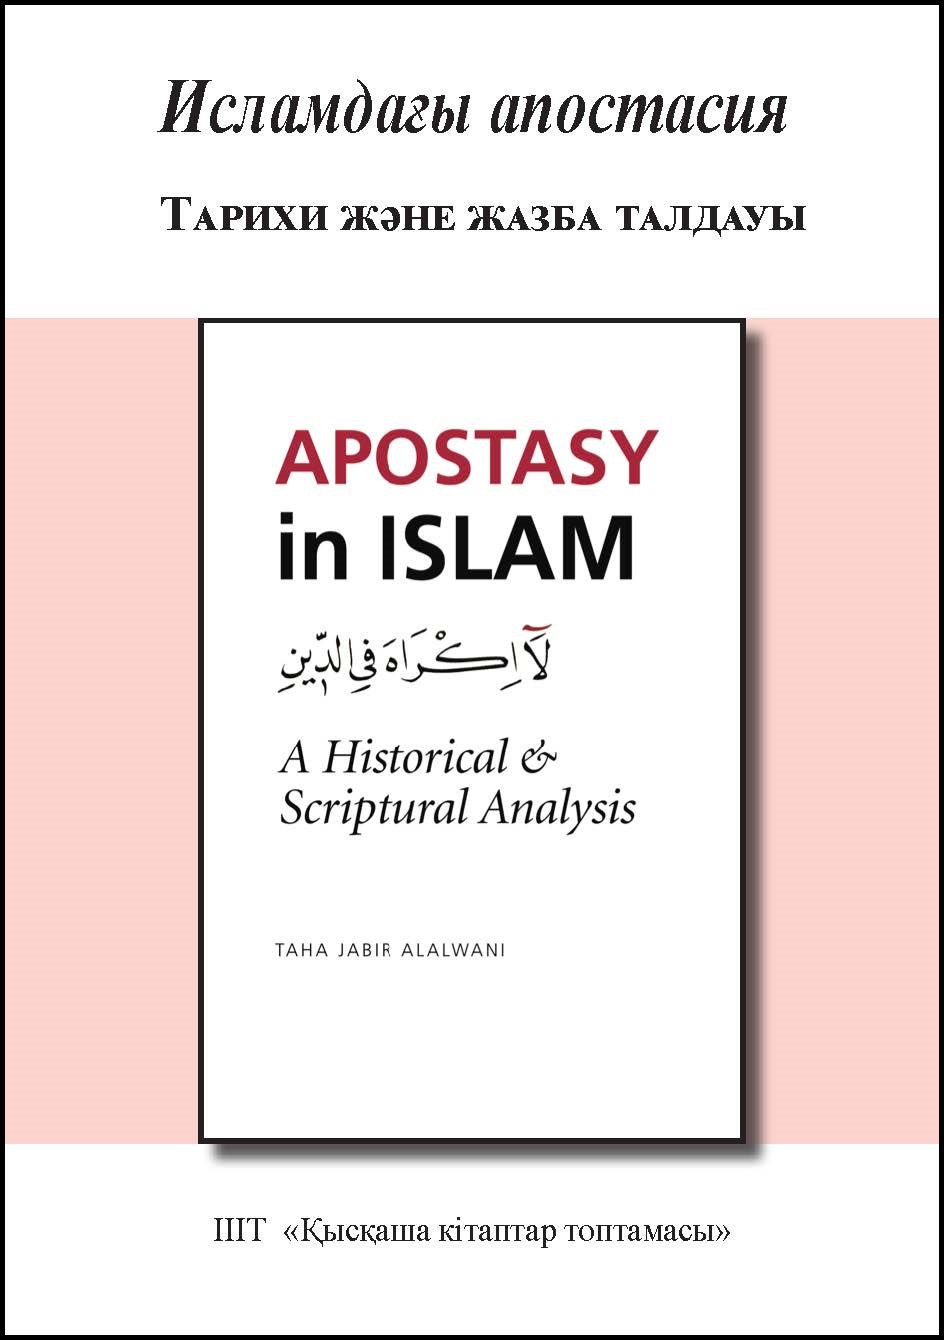 Kazakh: Исламдағы апостасия: Тарихи және жазба талдауы (Book-in-Brief: Apostasy in Islam: A Historical and Scriptural Analysis)